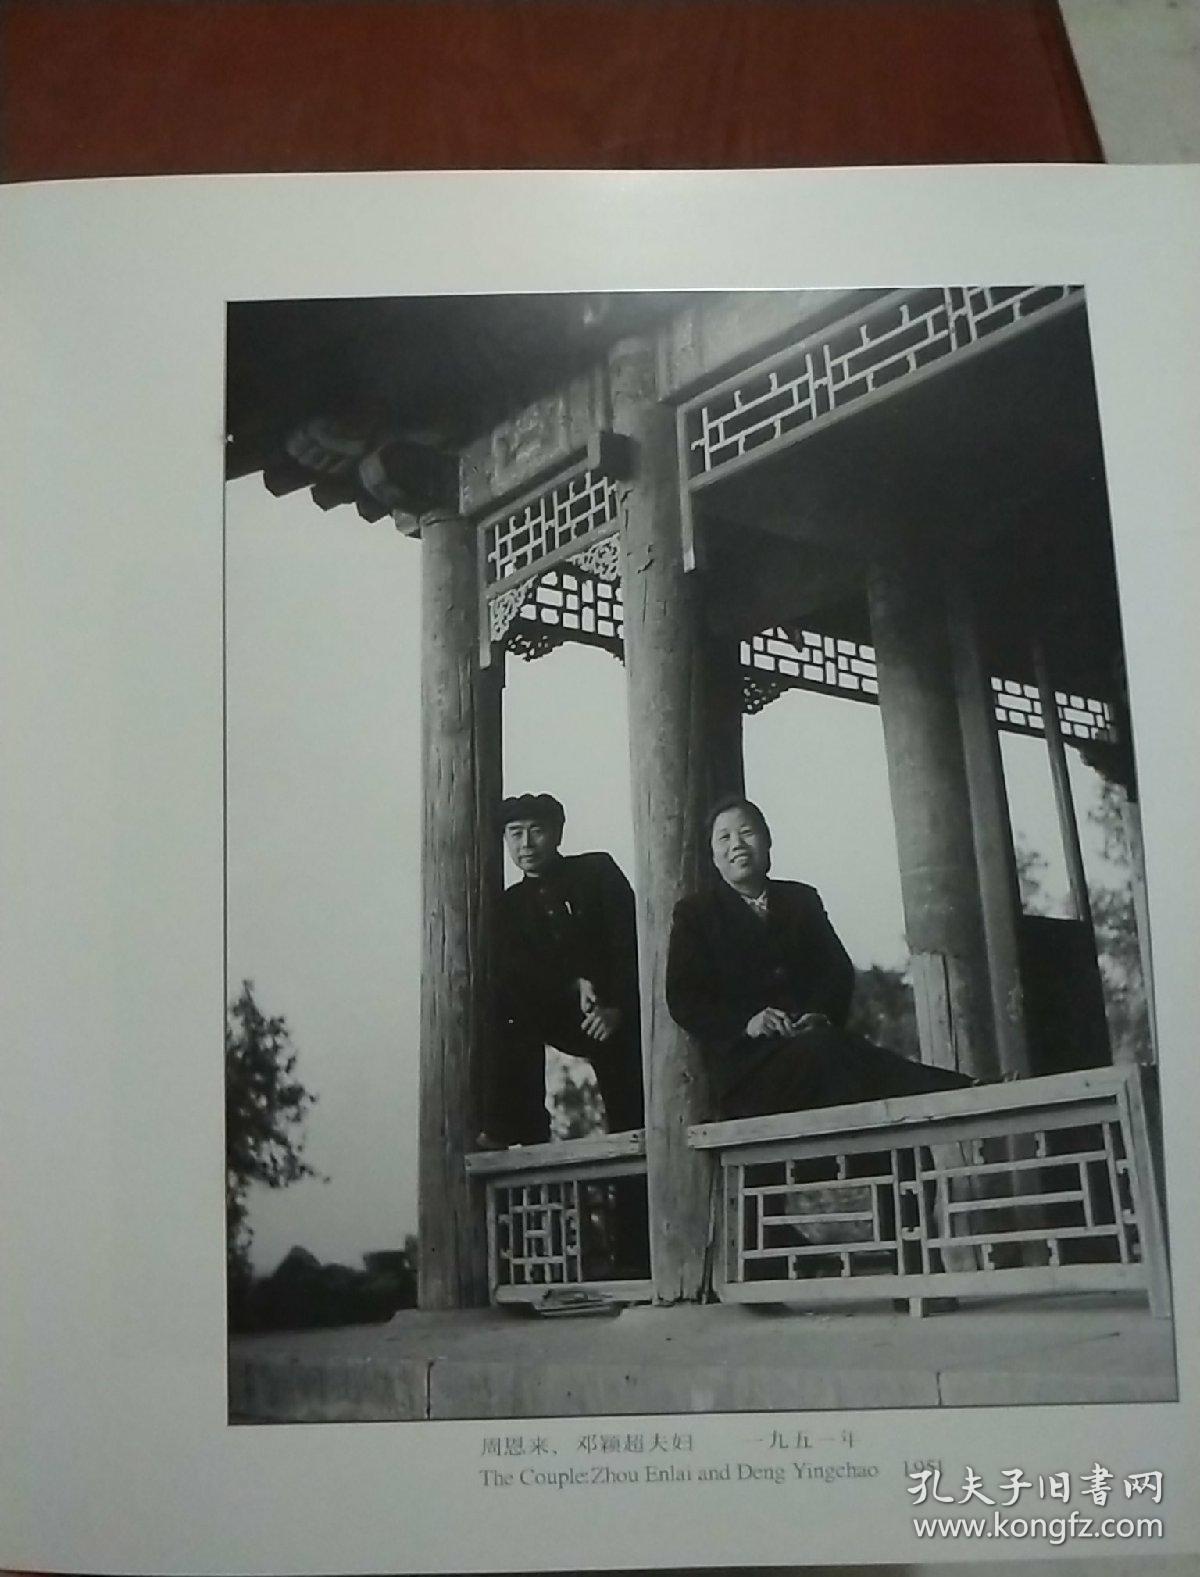 吕厚民摄影作品集:1950-1964 公仆颂(吕厚民签